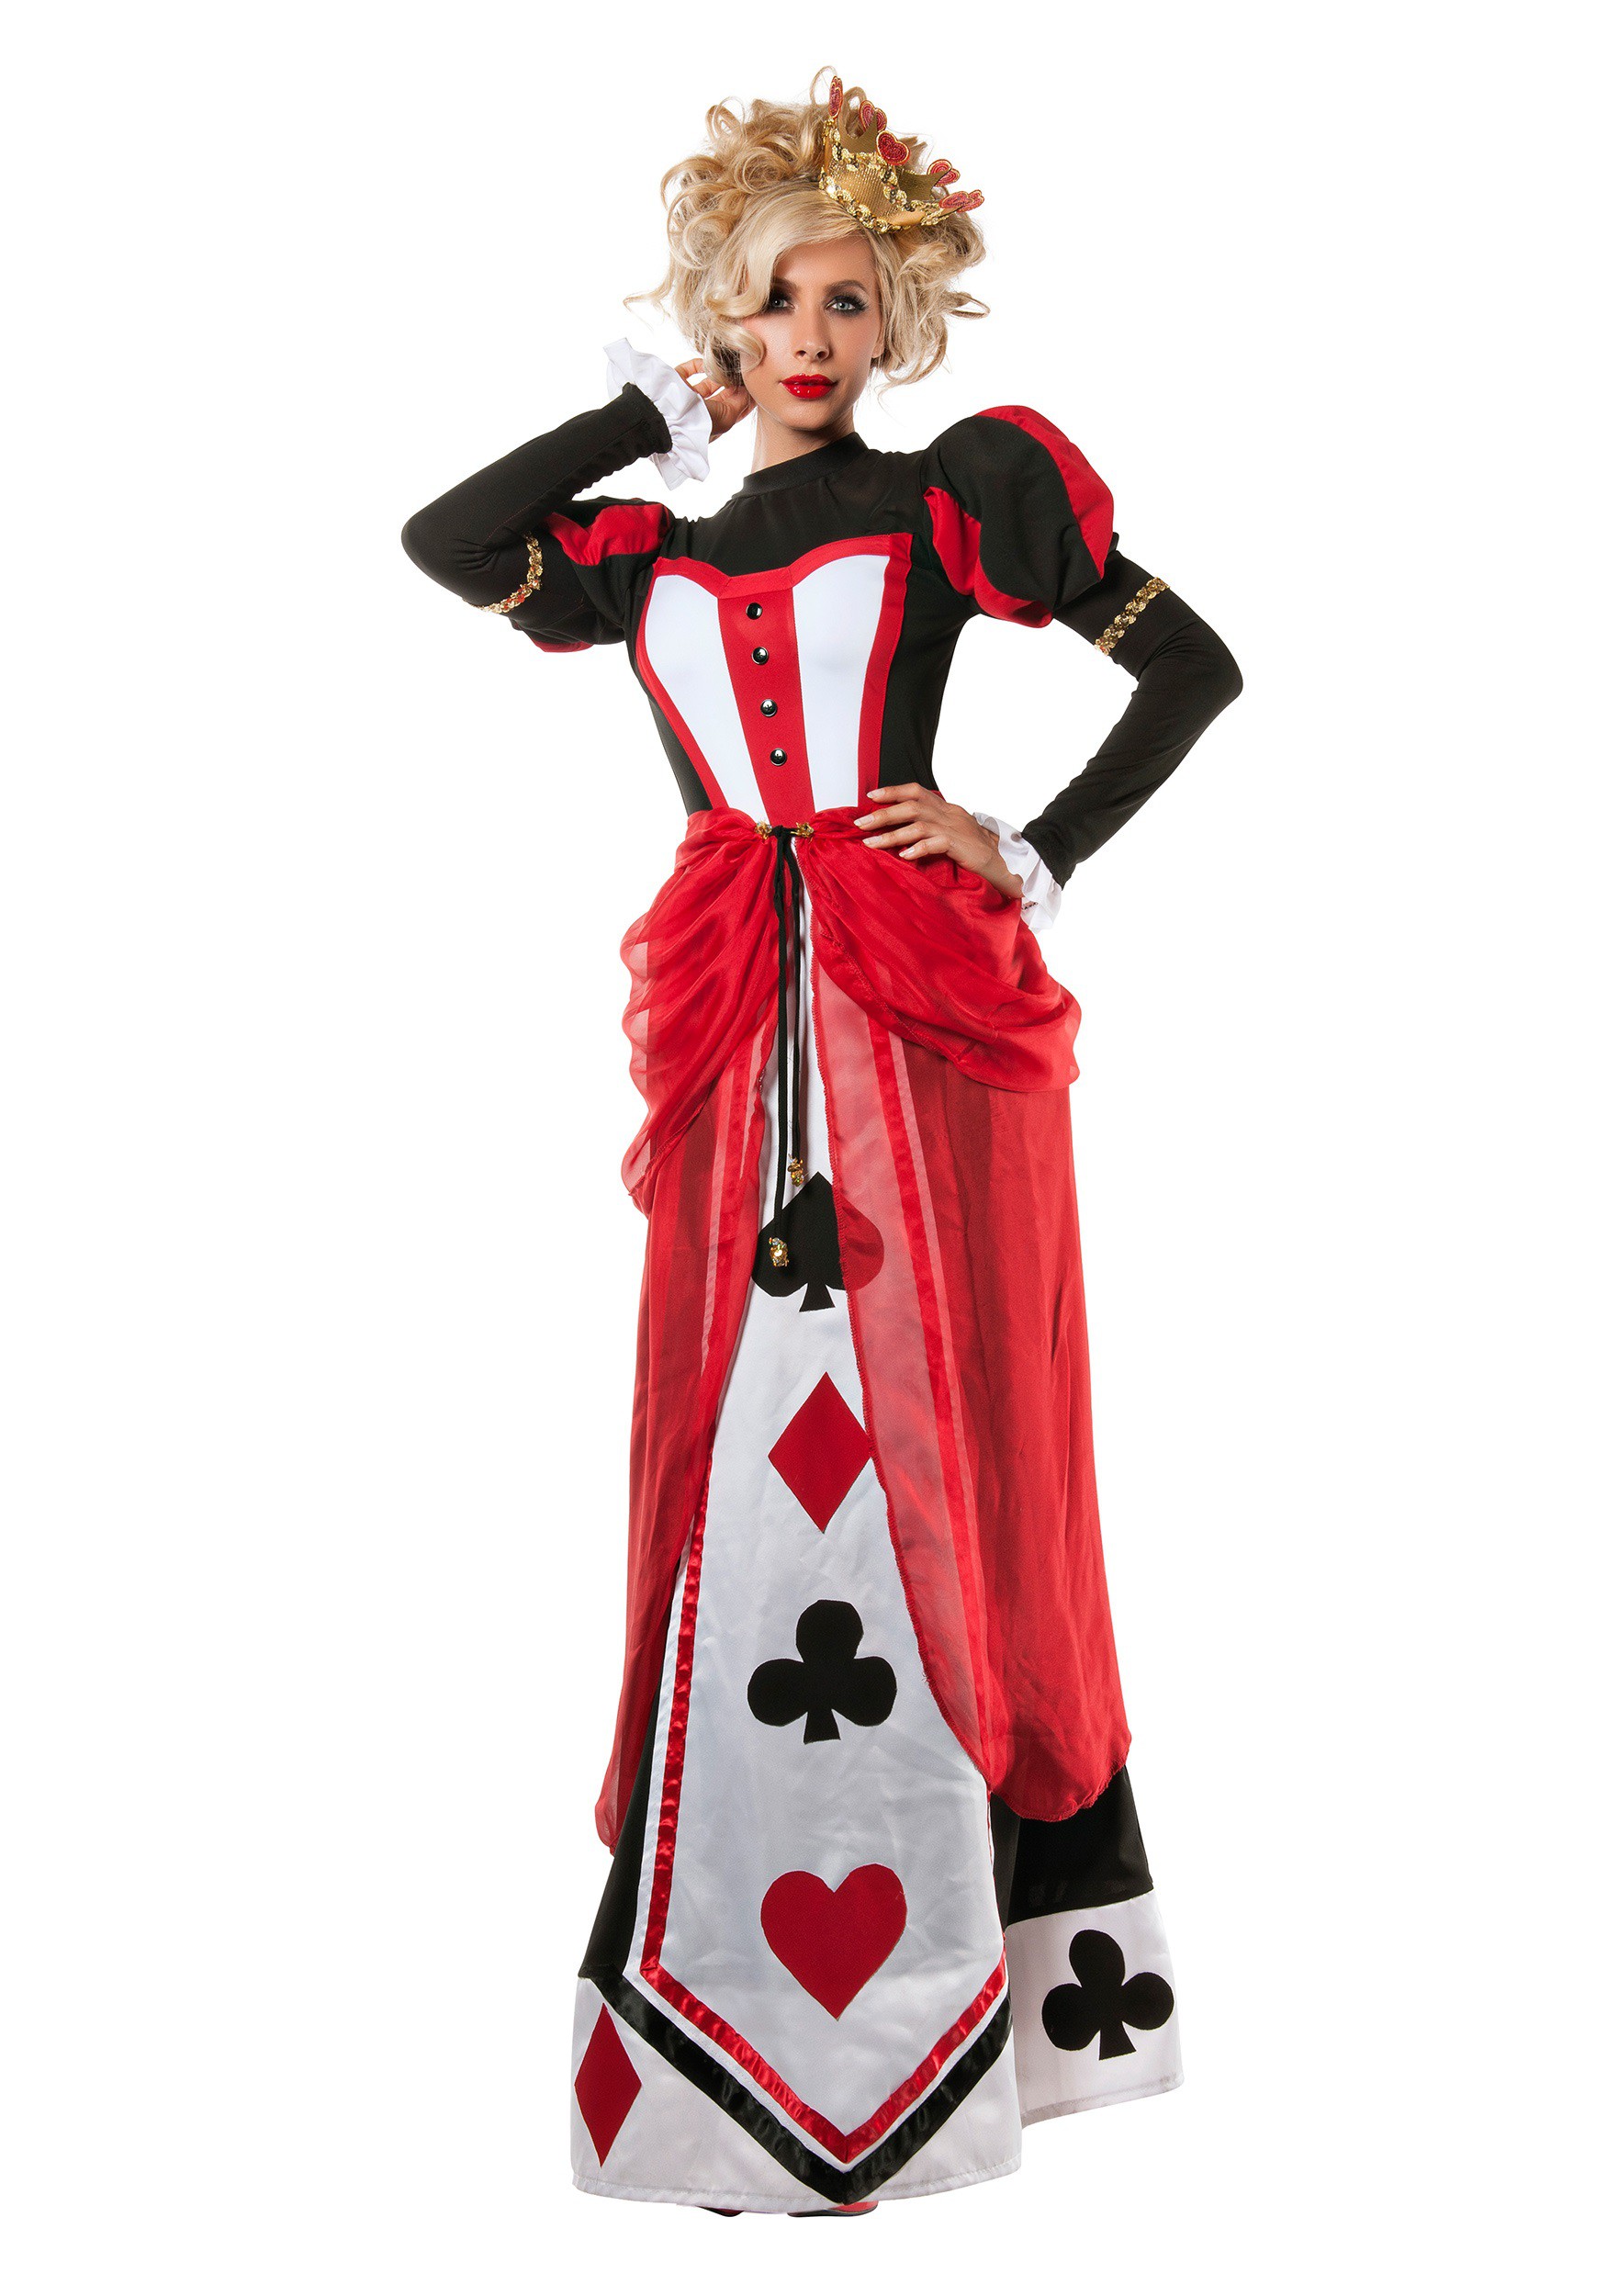 queen of hearts costume college